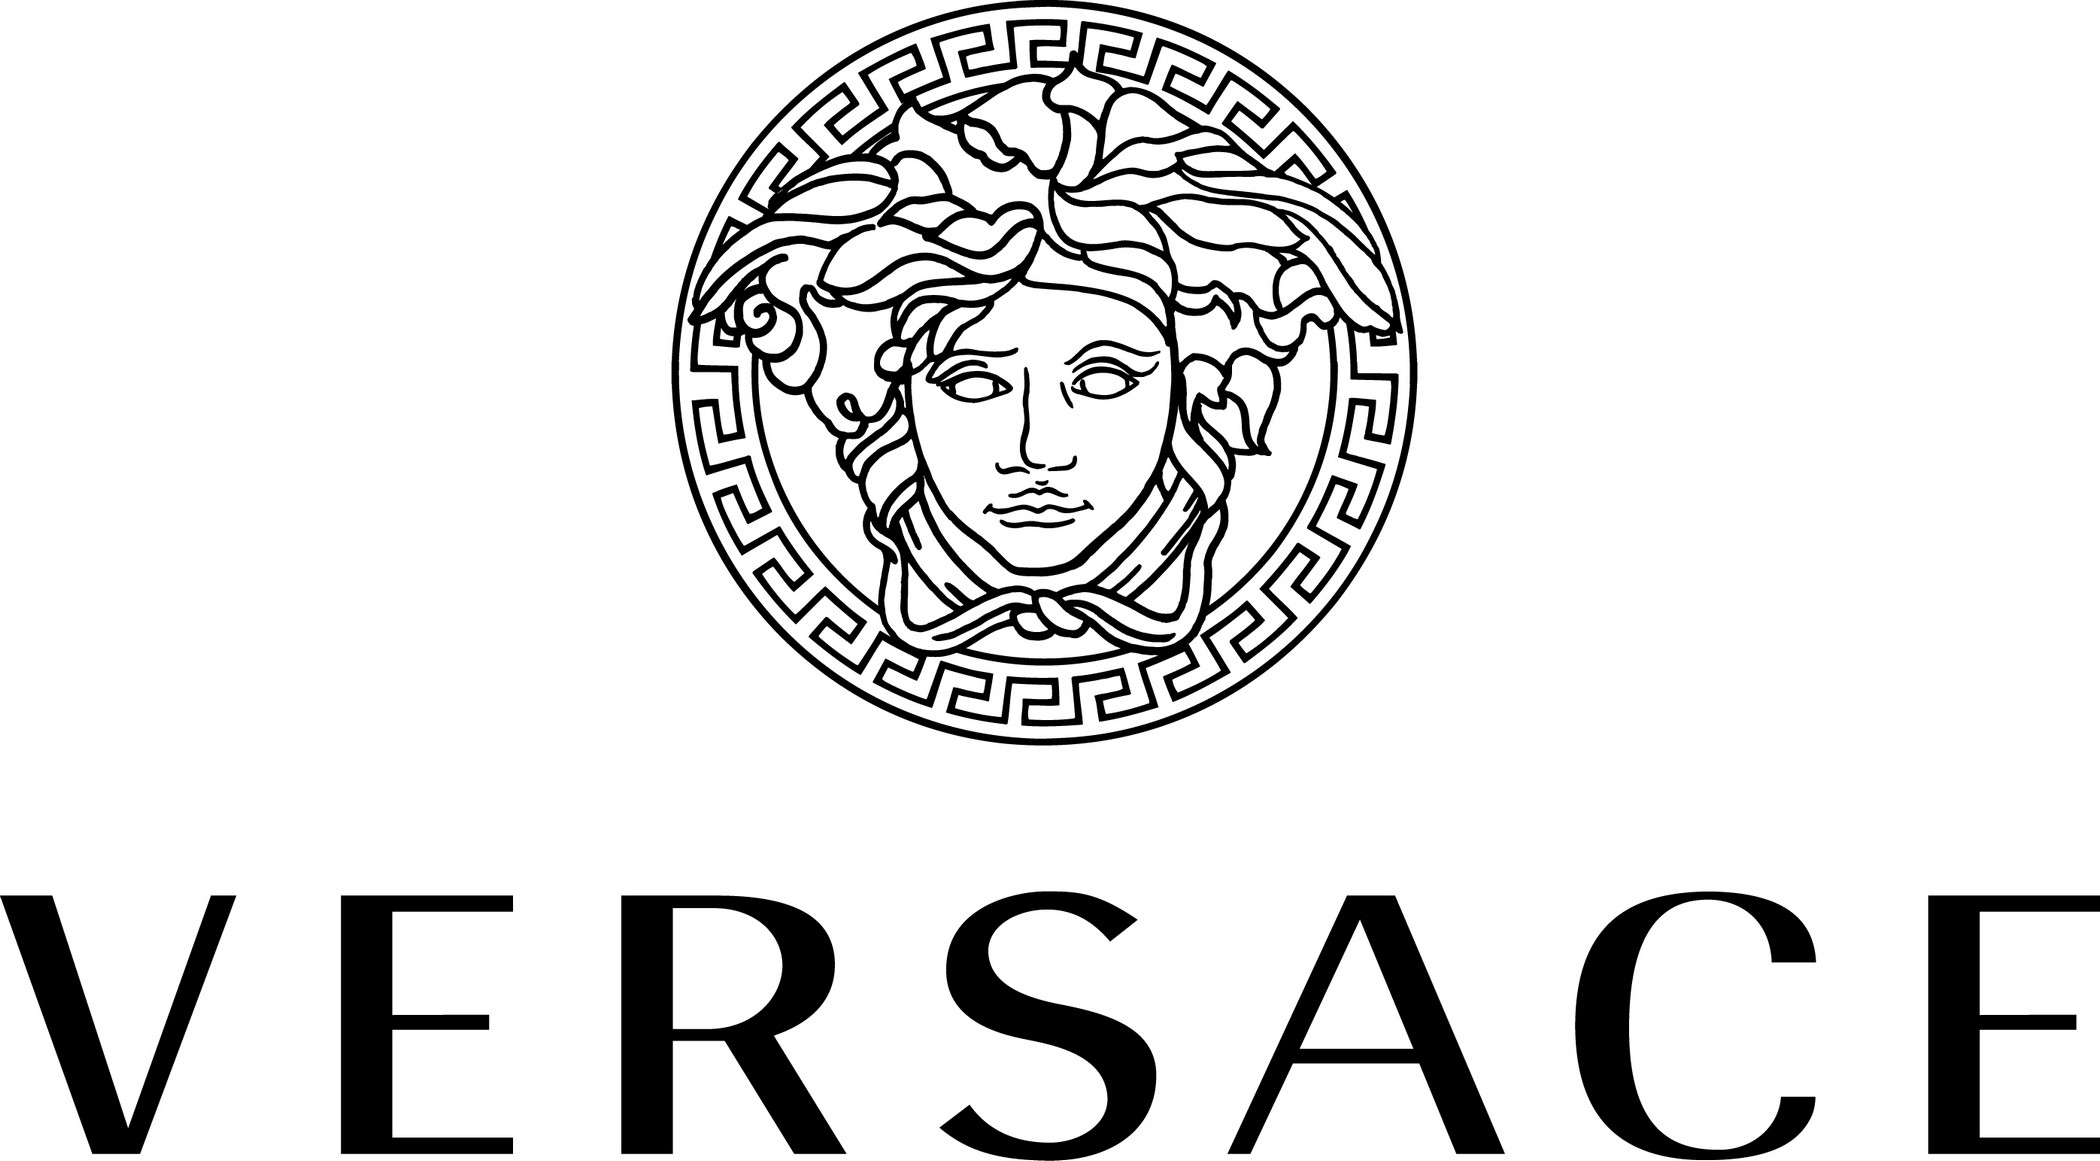 logo-versace.jpg